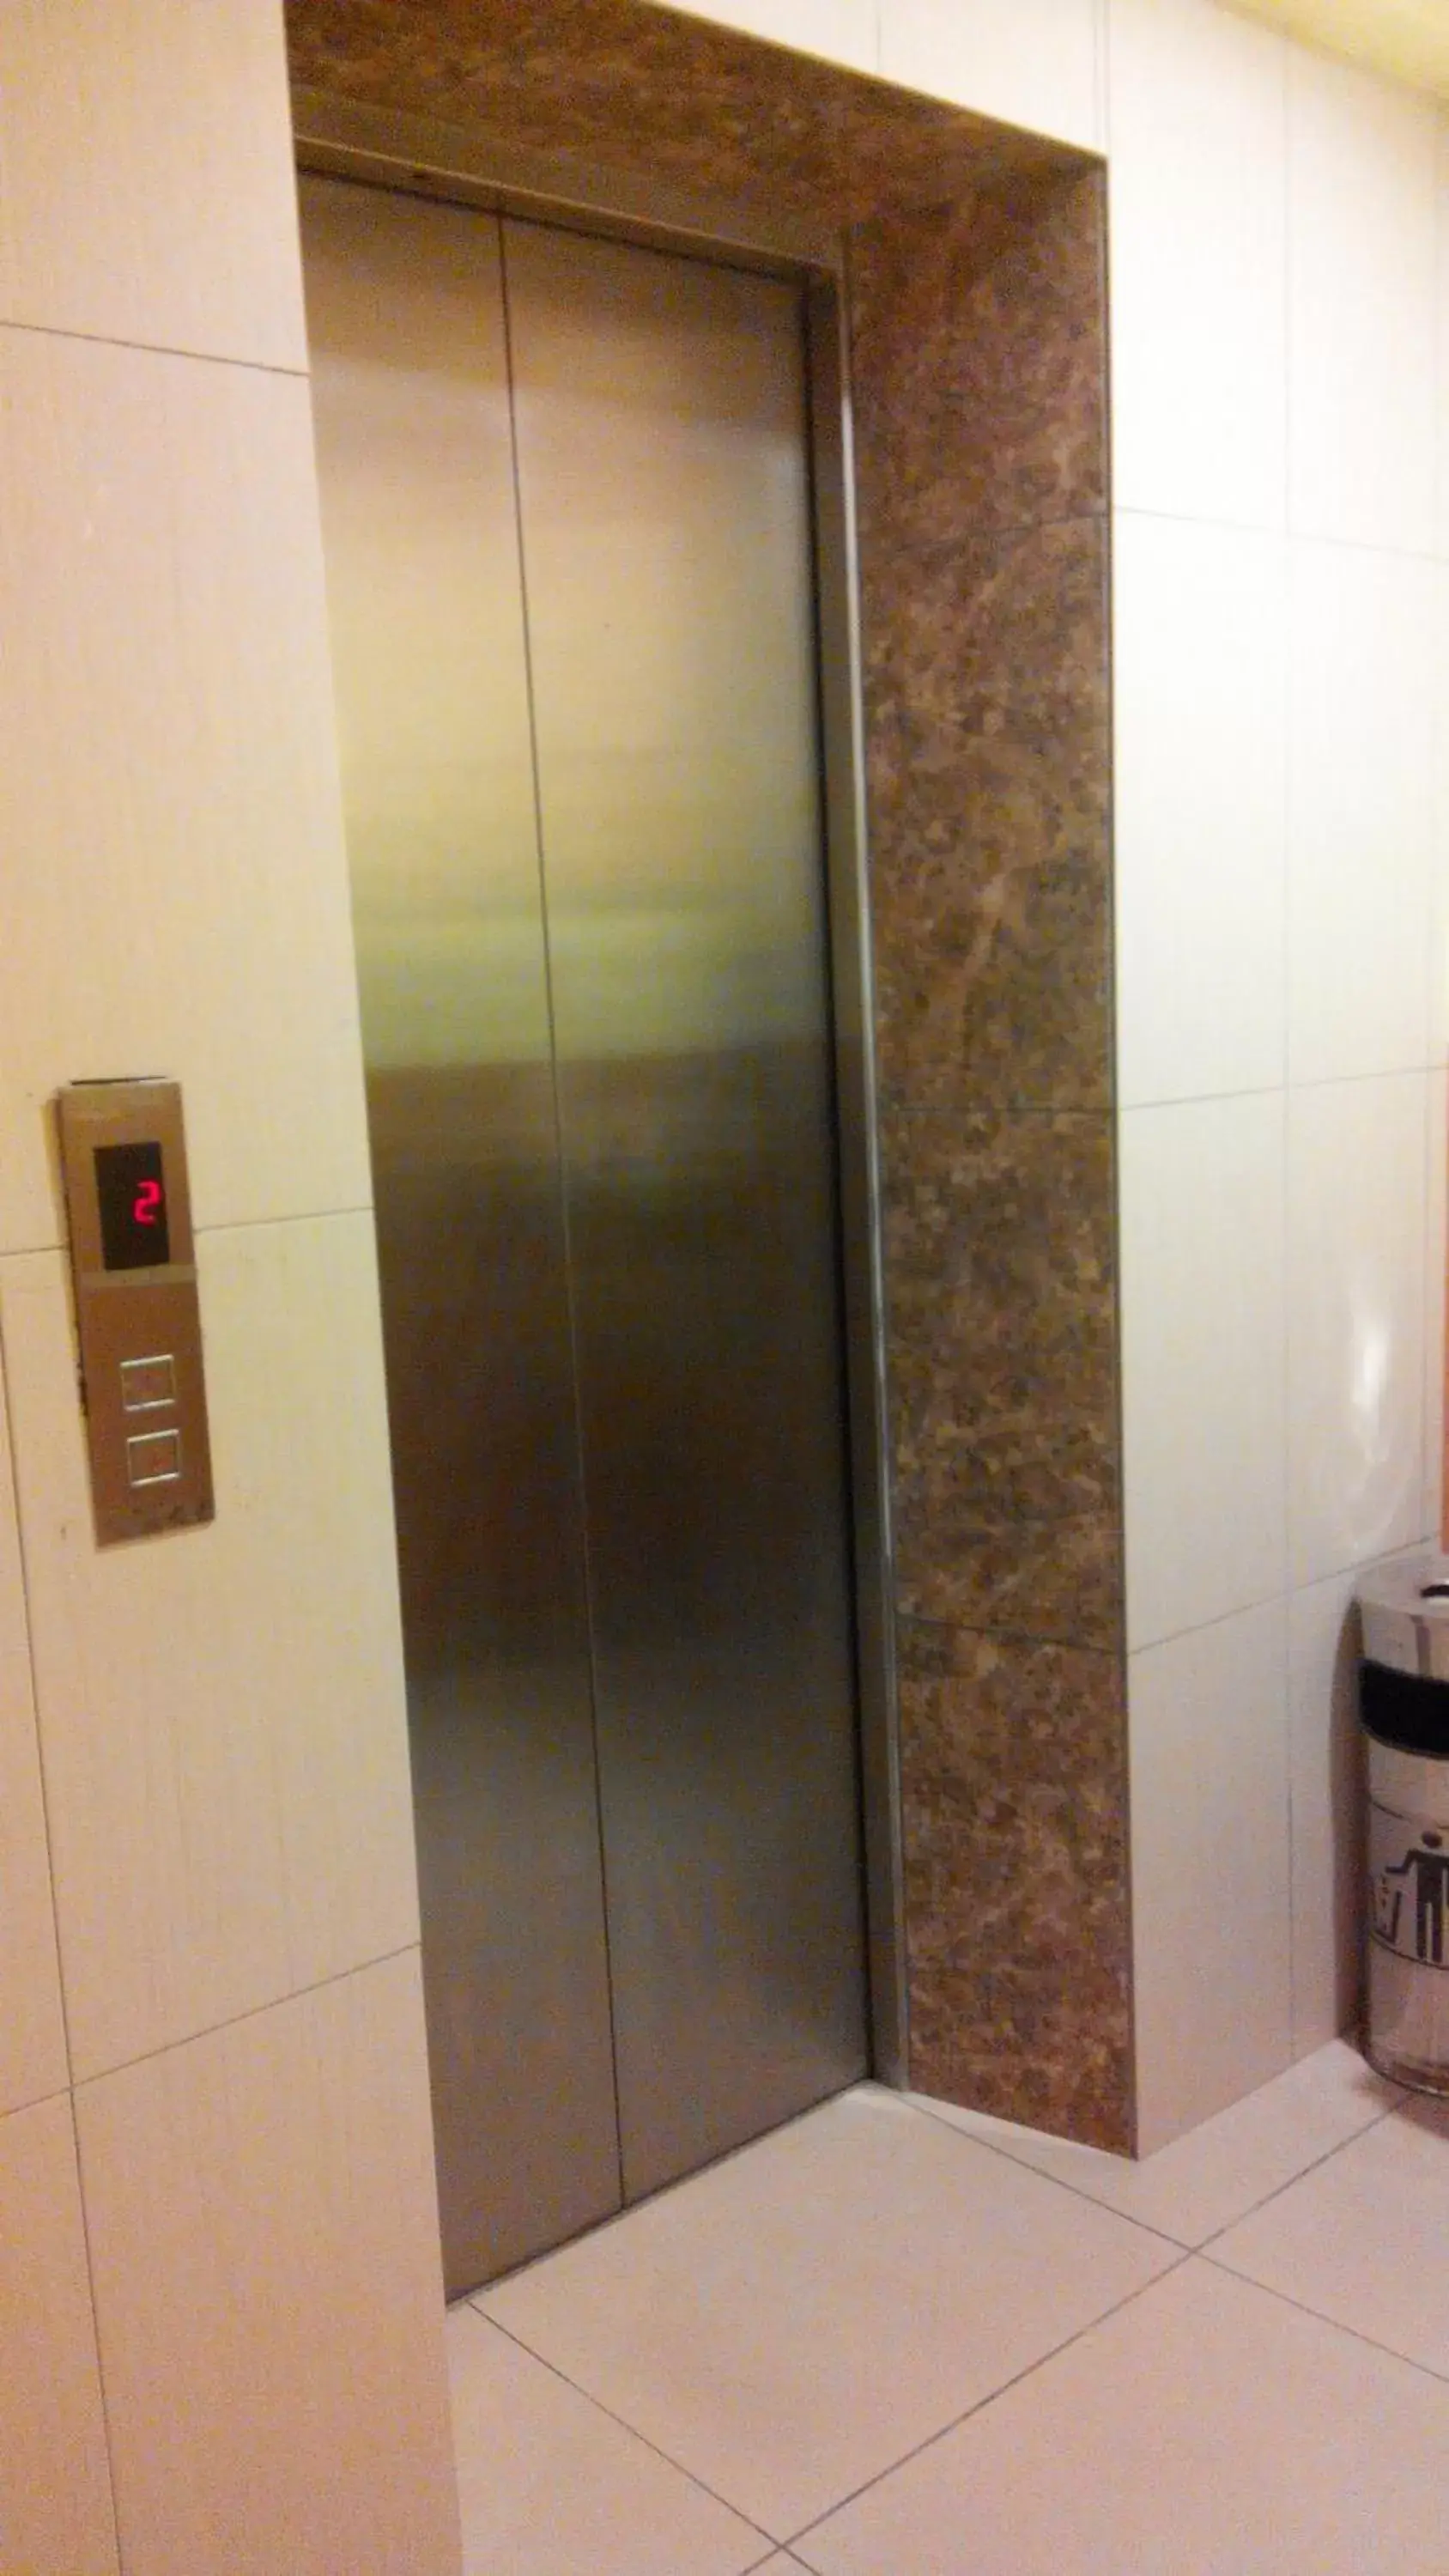 Area and facilities, Bathroom in Sun Inns Hotel Kuala Selangor